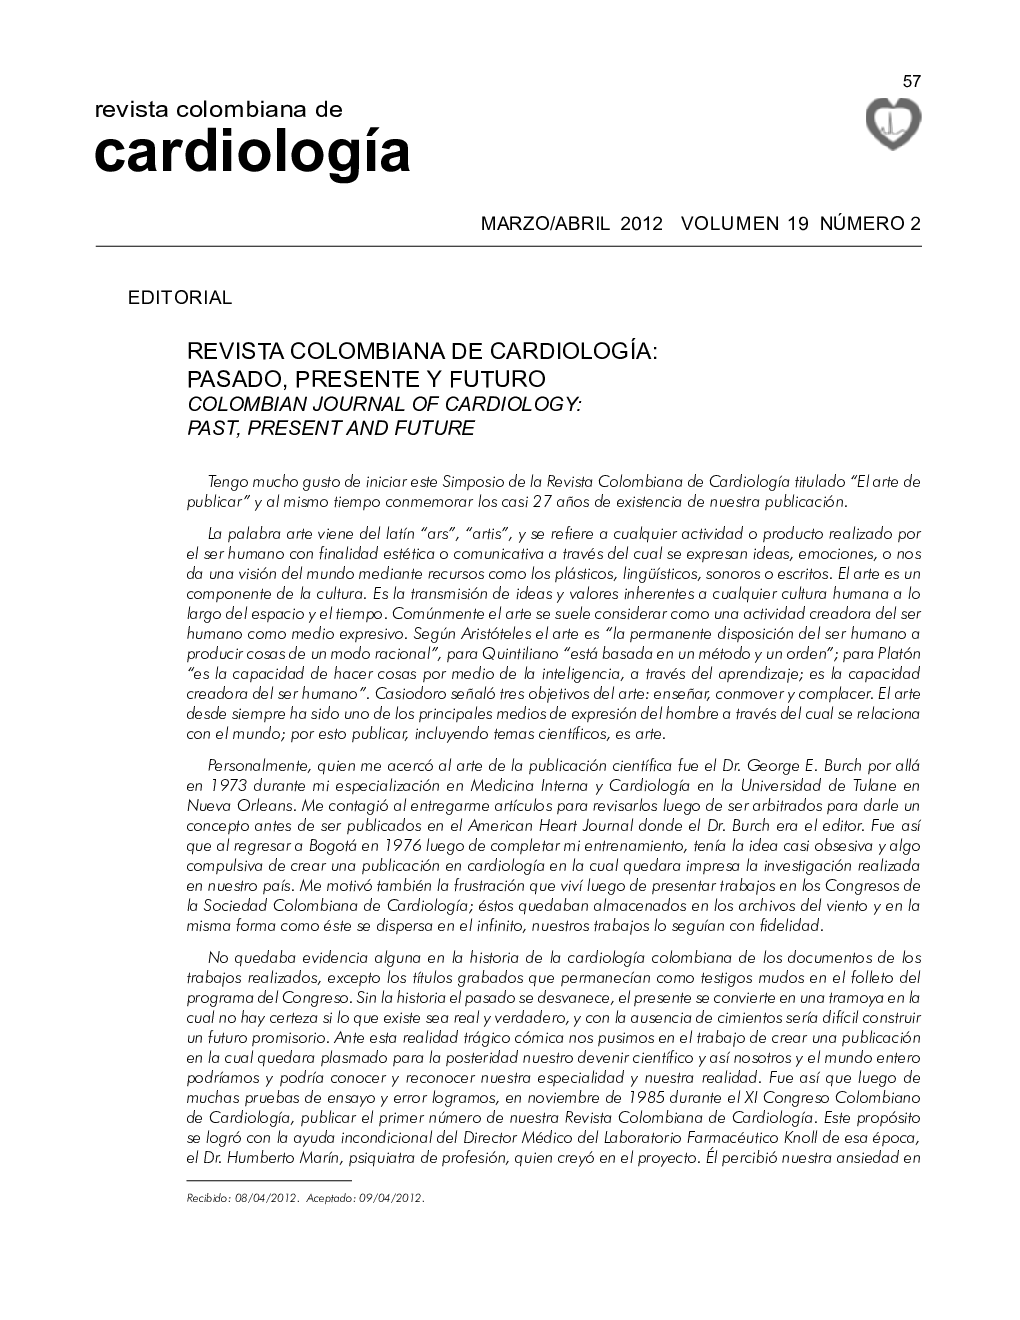 Revista colombiana de cardiologÃ­a: pasado, presente y futuro